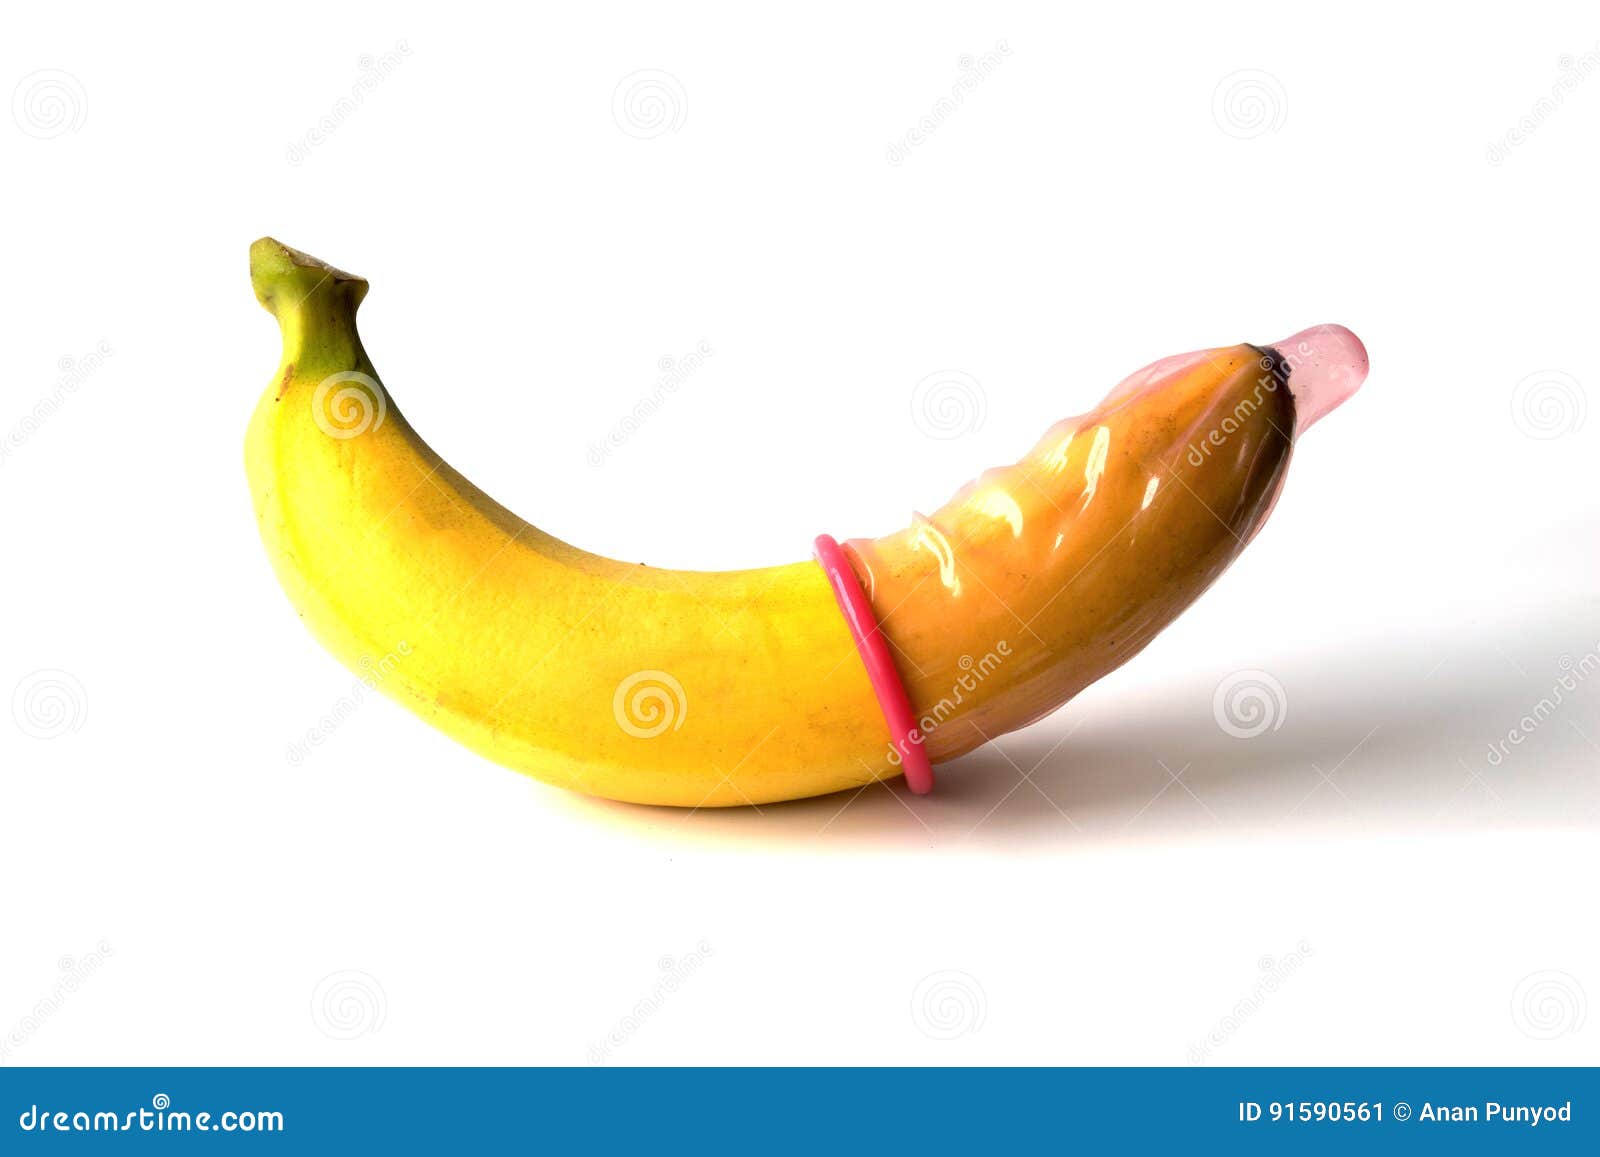 член виде банана фото 17